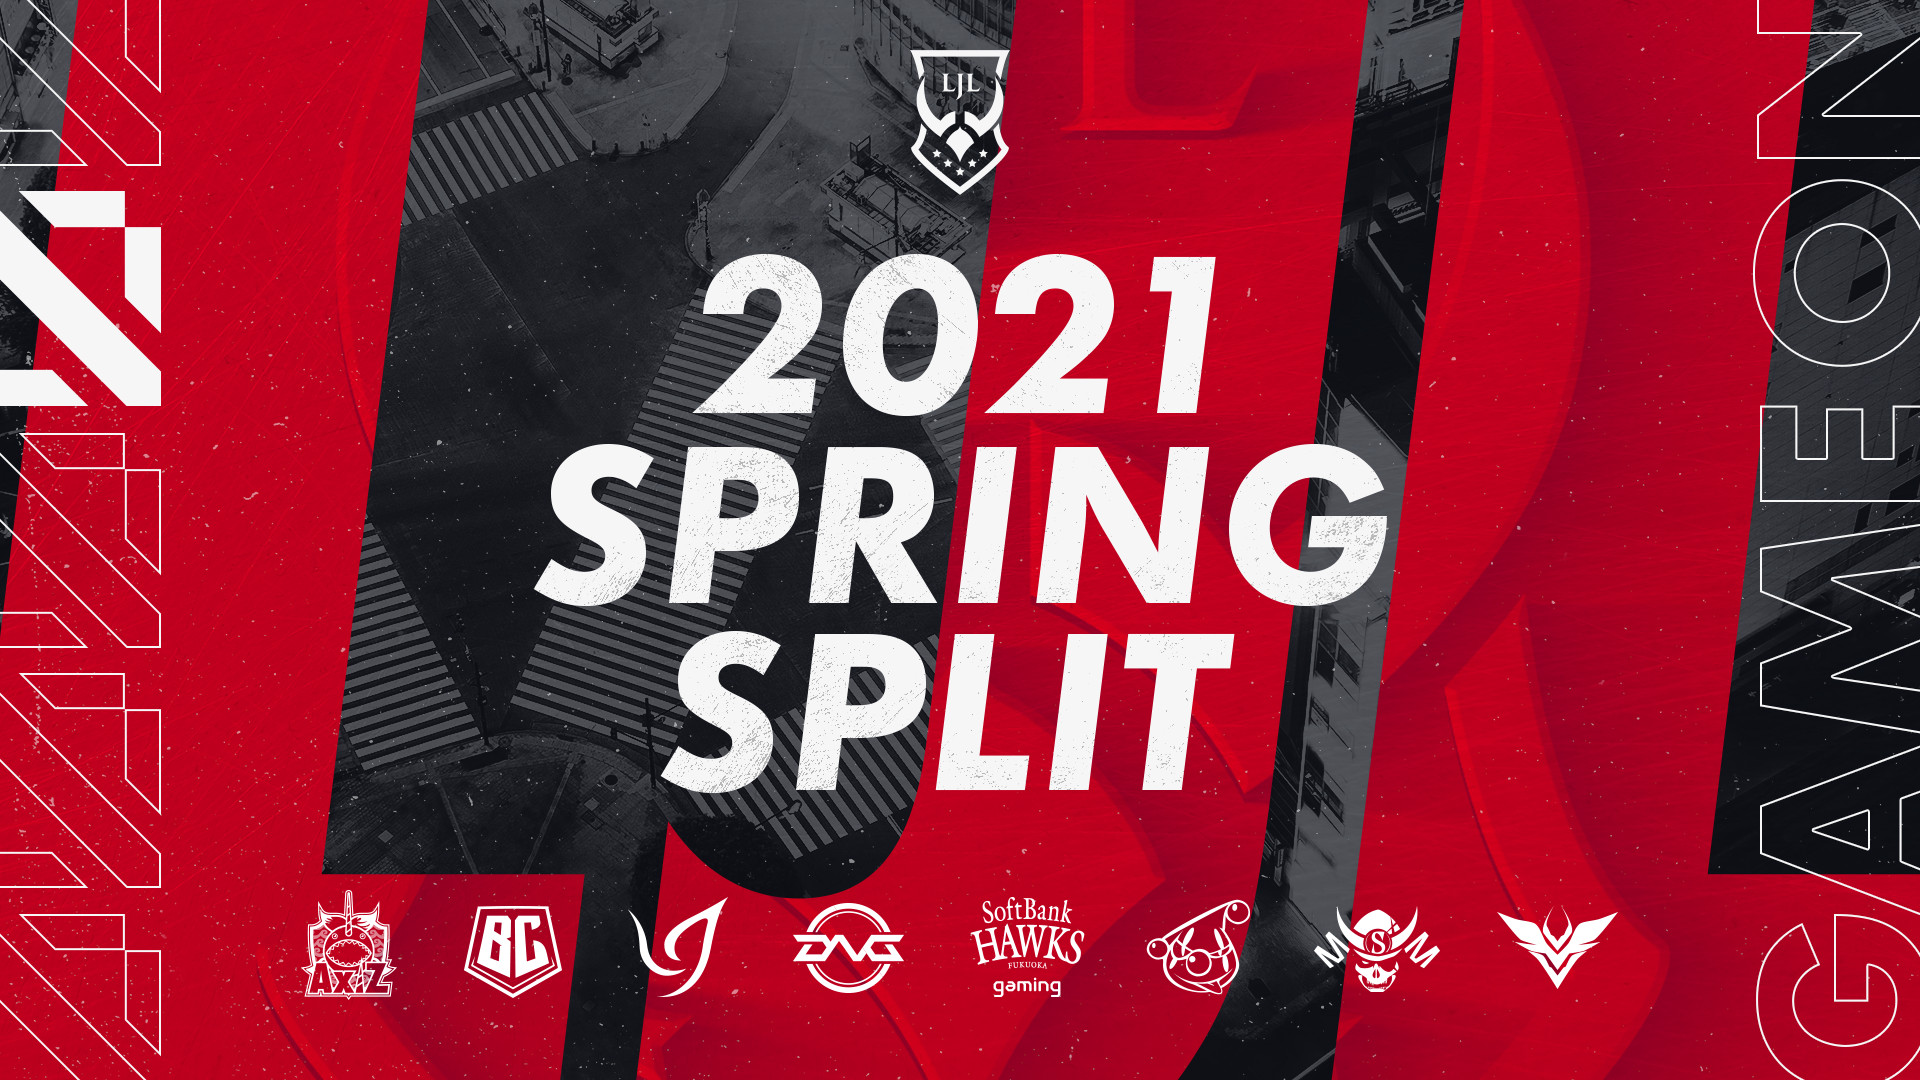 【大会情報】LJL 2021 Spring Split WEEK 7